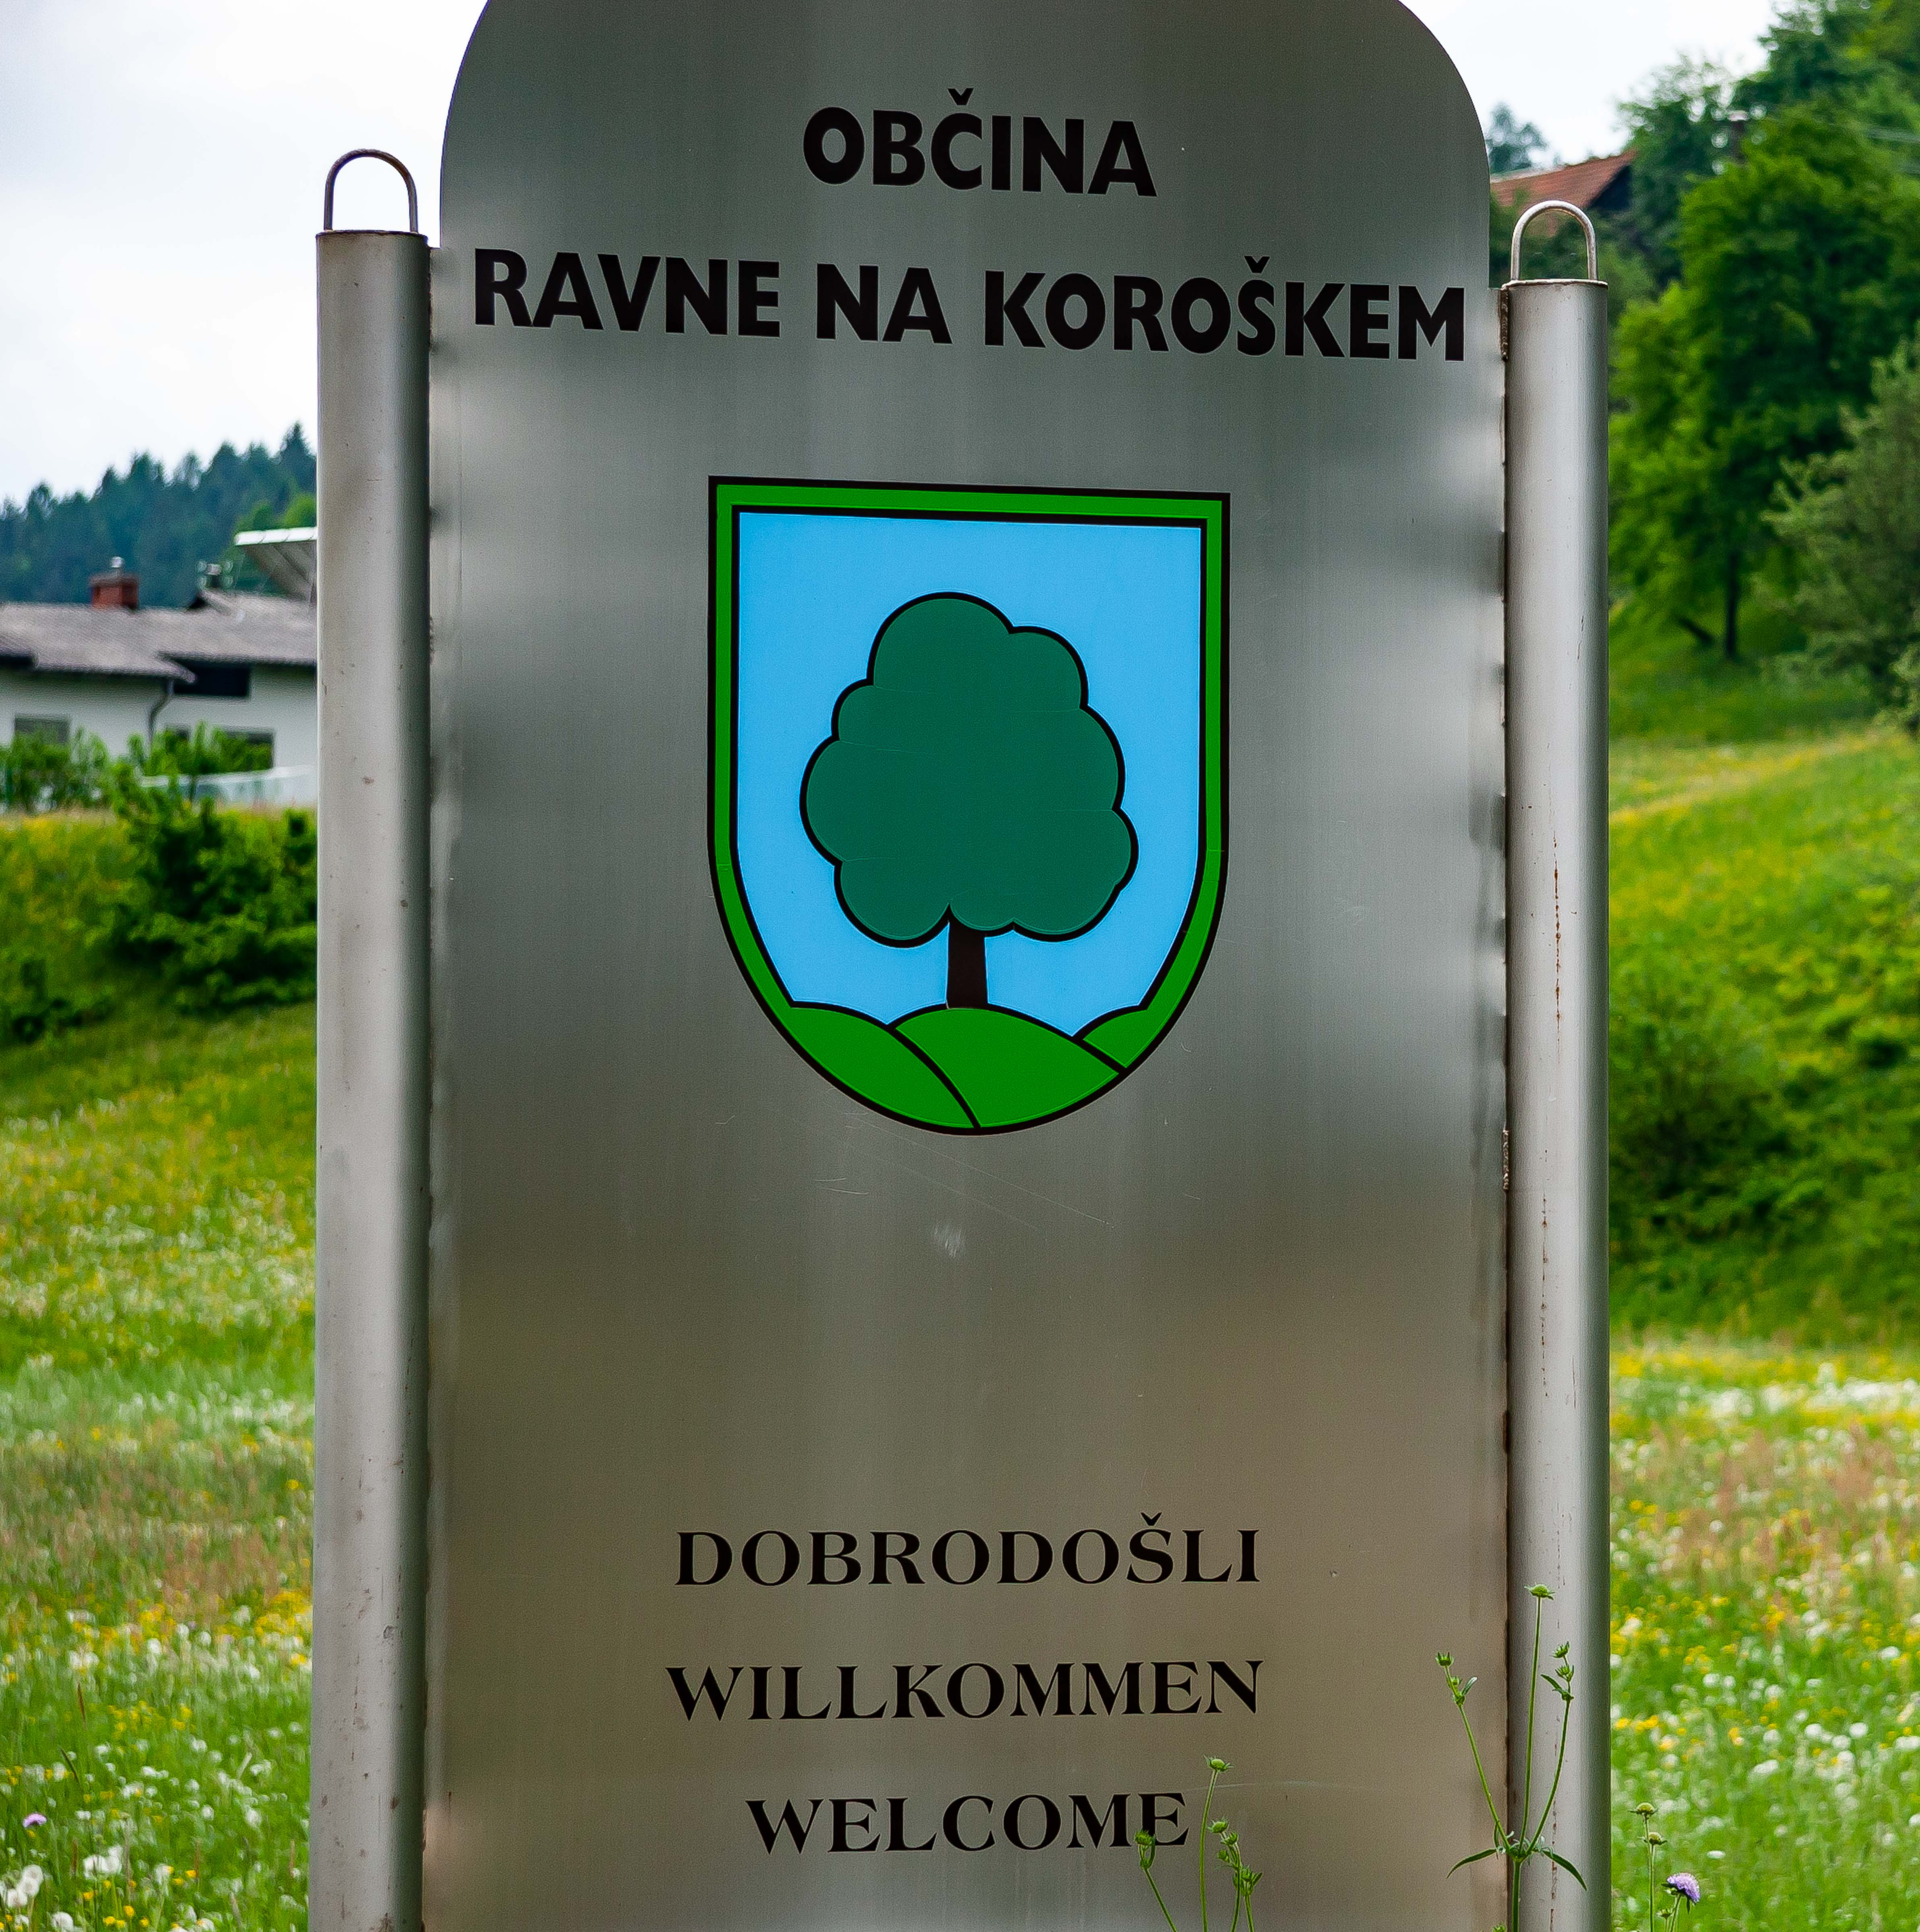 Slovenia, Ravne Na Koroskem Prov, Dobrodosli Obcina Ravne Na Koroskem, 2006, IMG 8472